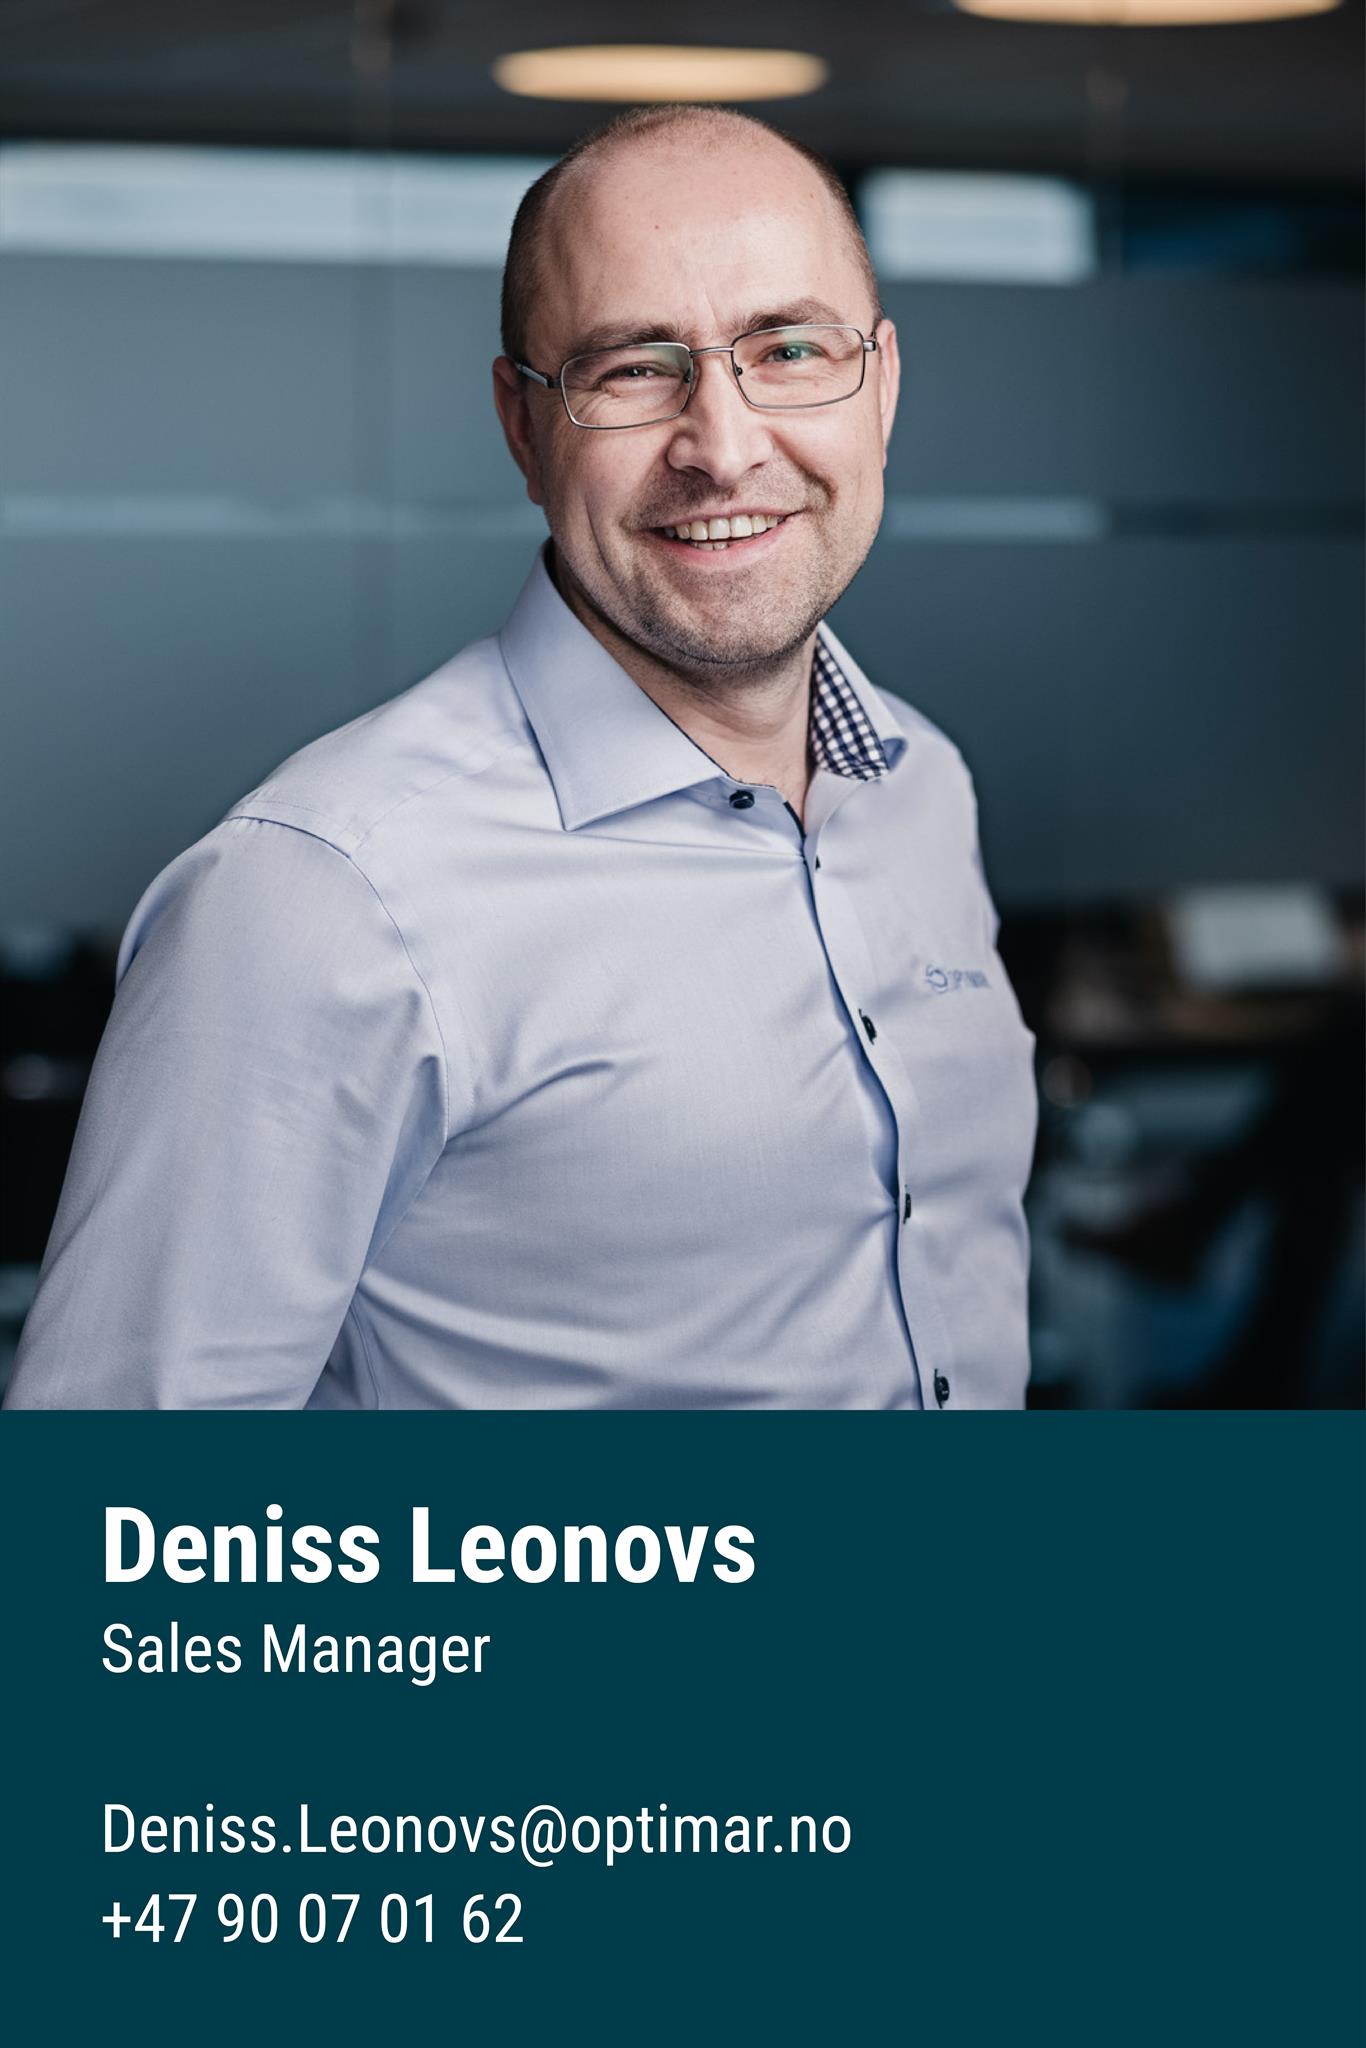 Deniss Leonovs